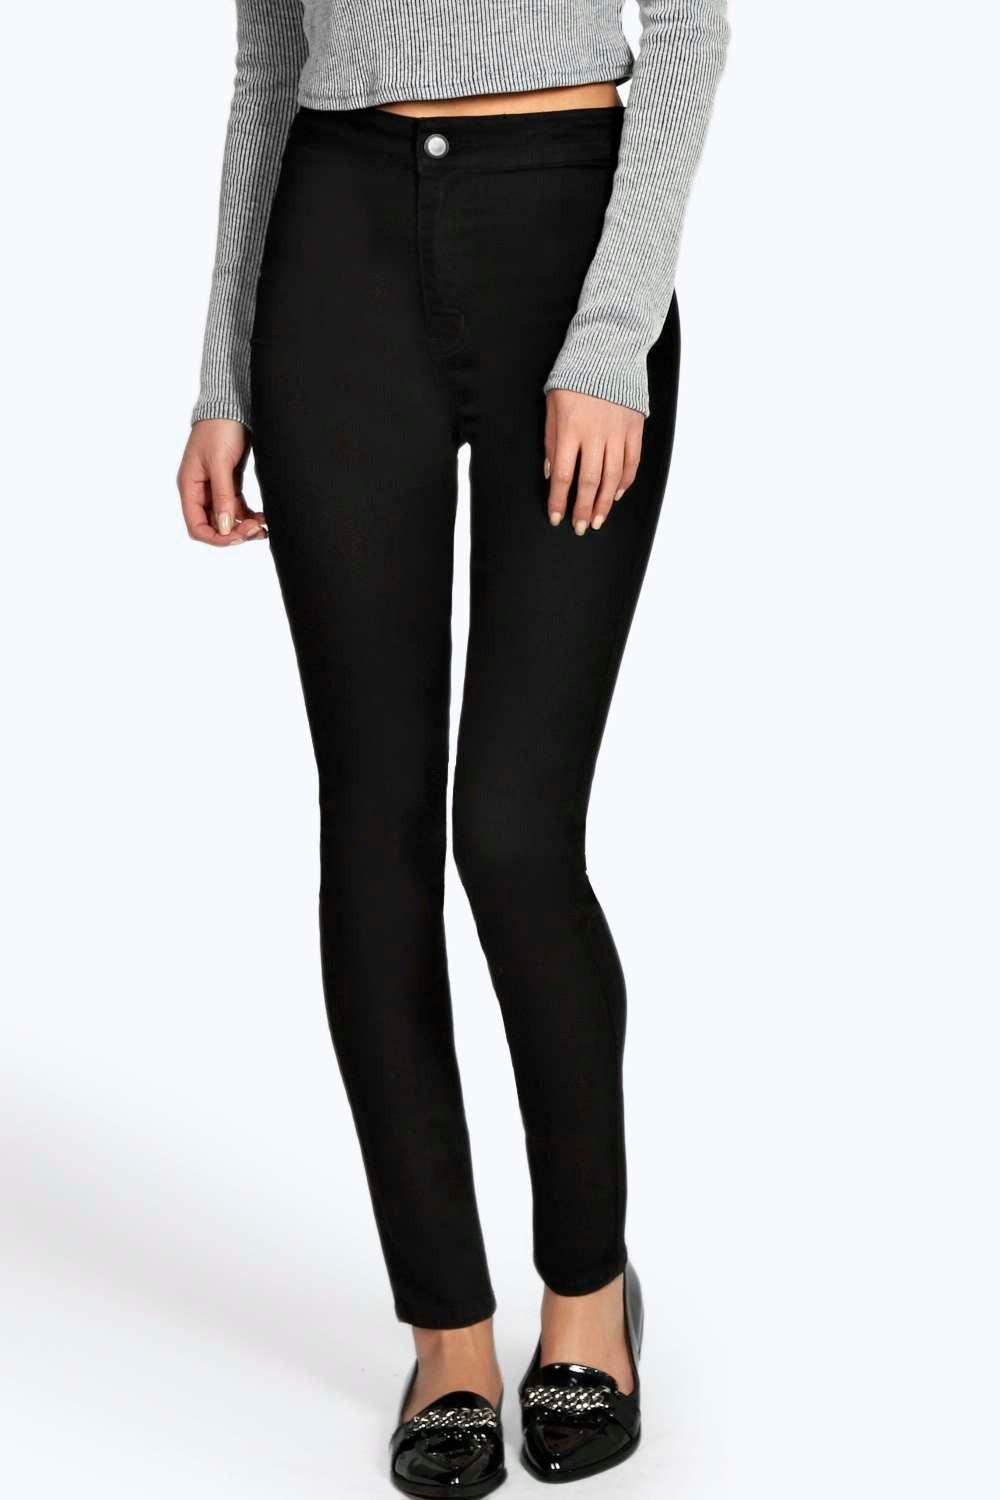 Lara Skinny High Waist Denim Tube Jeans at boohoo.com